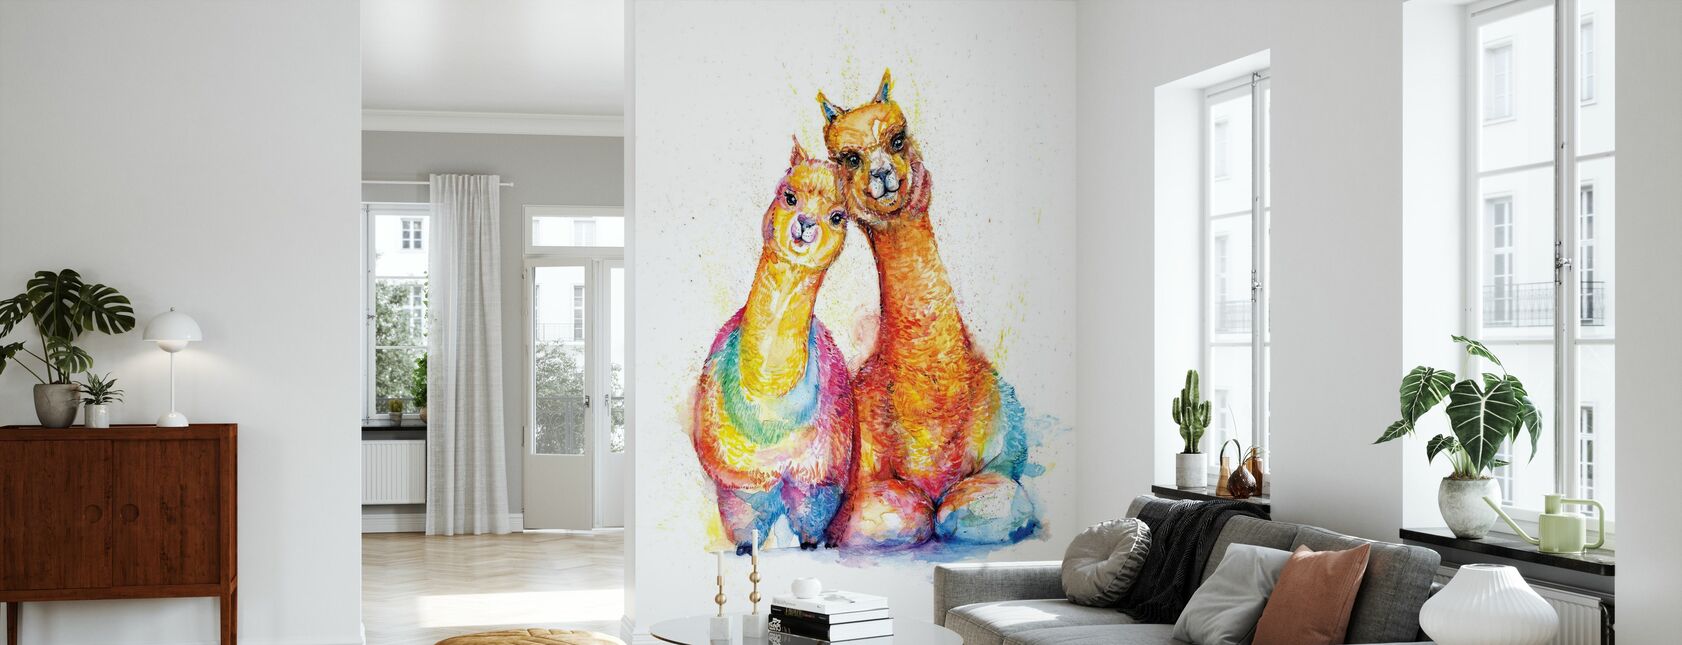 Packa Alpaca - Papel pintado - Salón